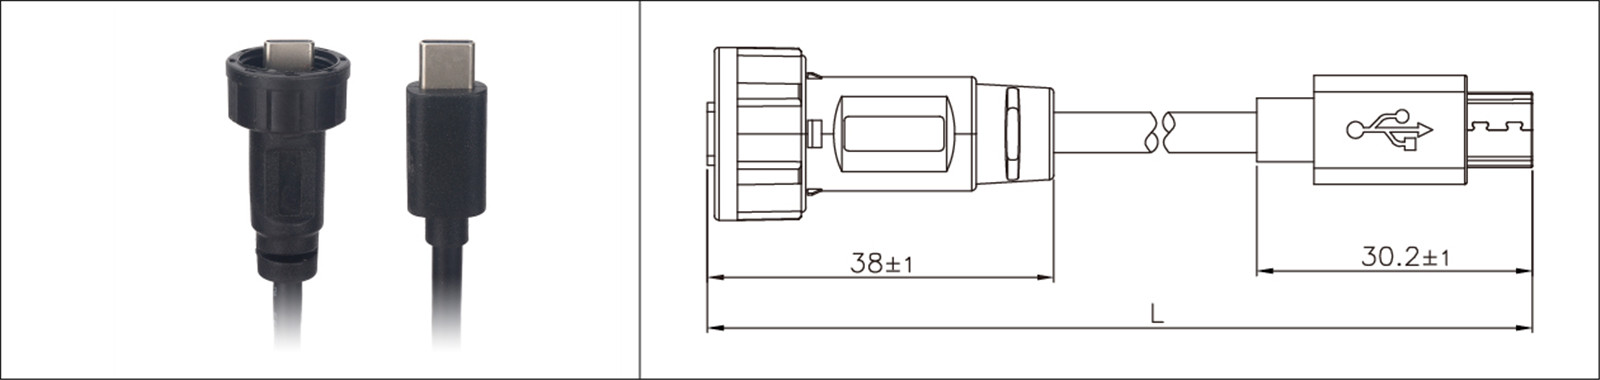 Micro USB montaje en panel tipo 2.0 3.0 hembra y macho impermeable IP67 cable de extensión sobremoldeado conector industrial-02 (14)